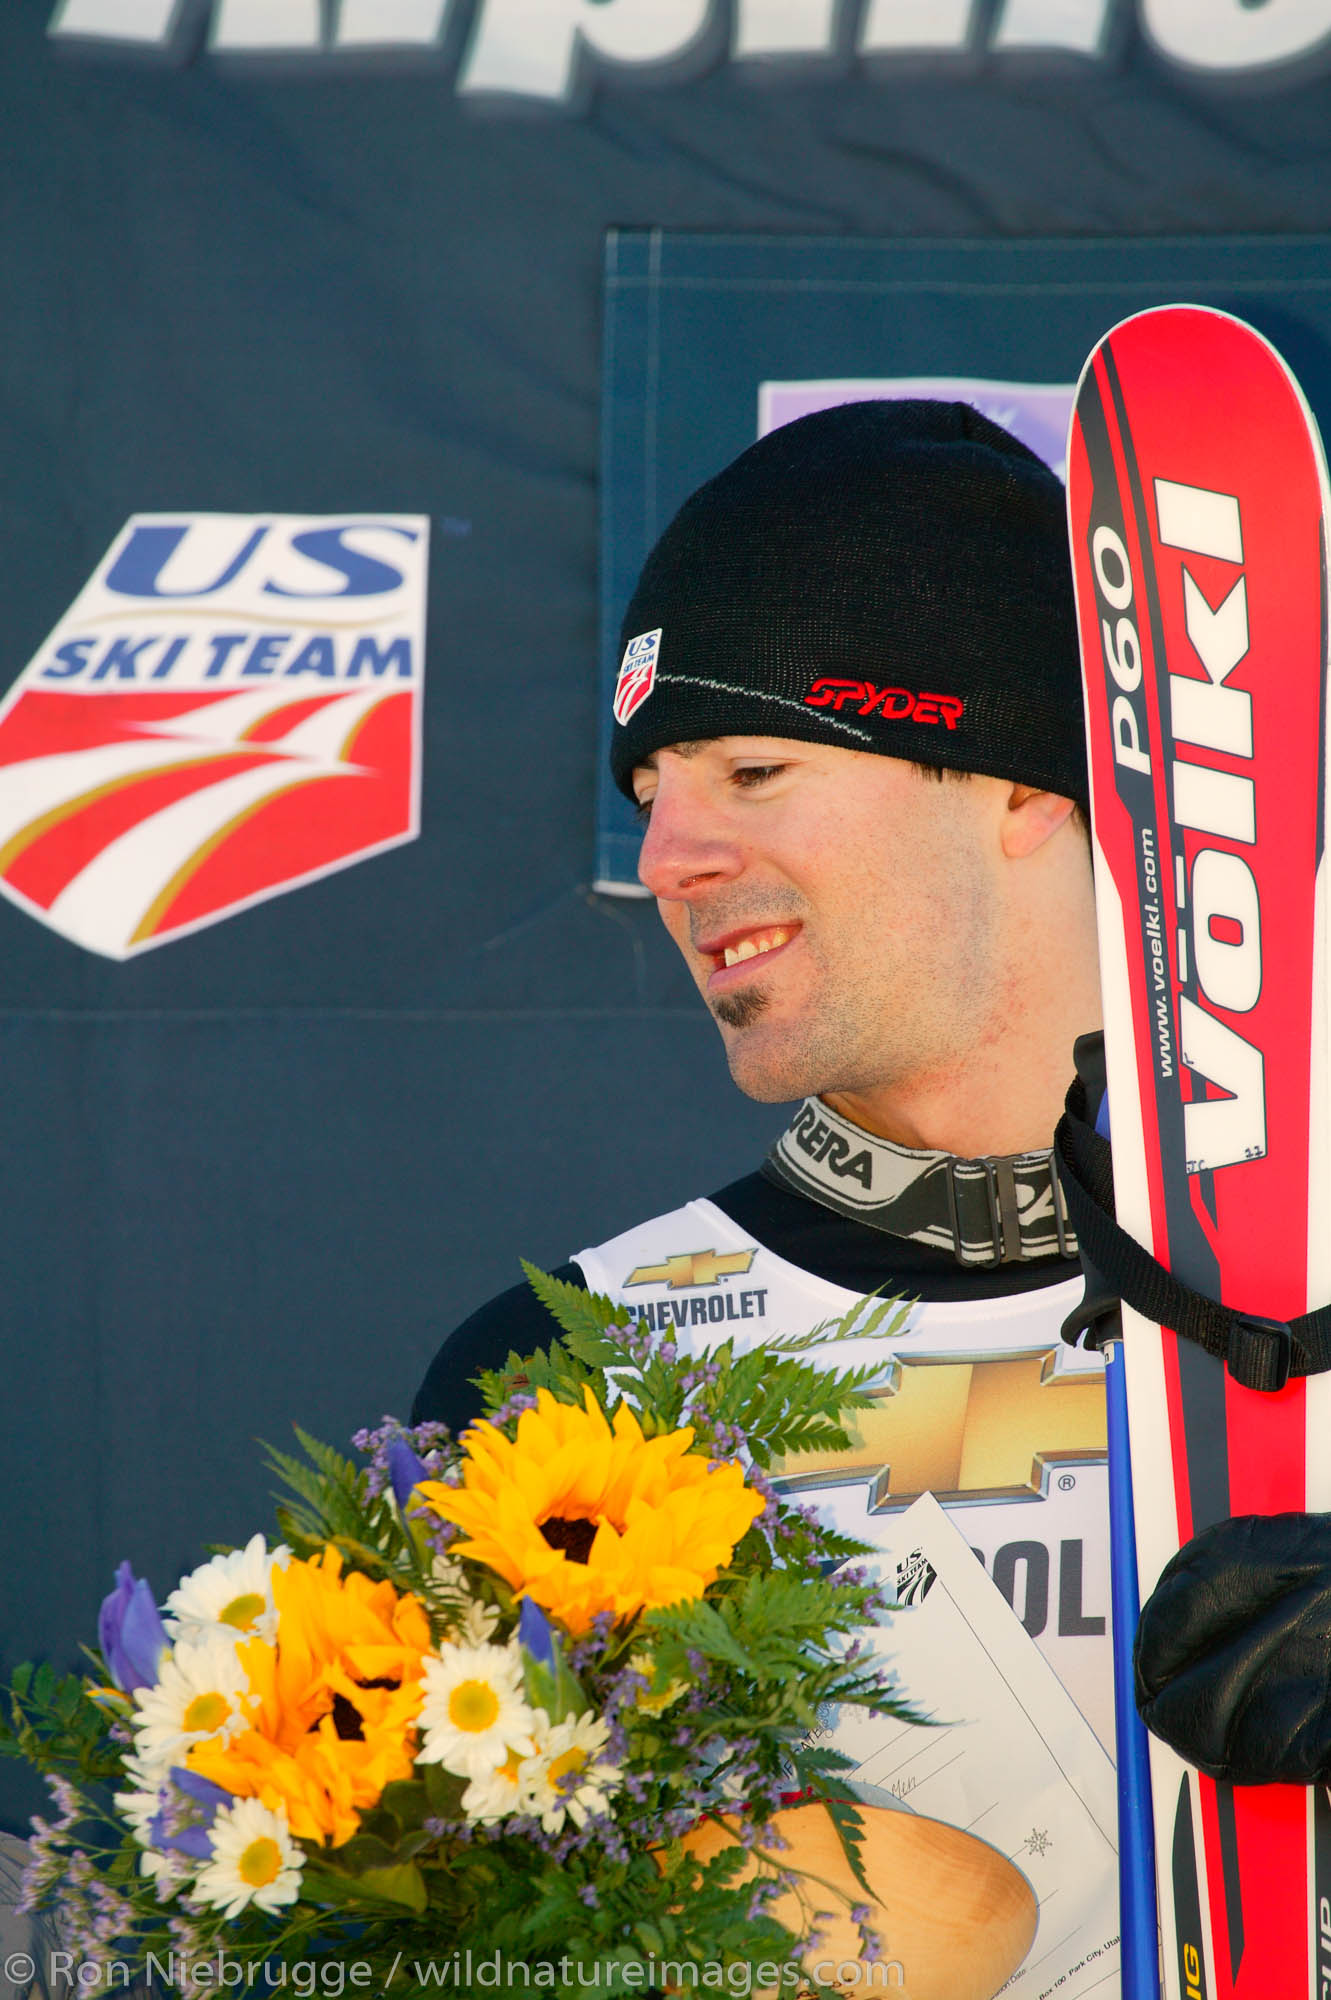 Tom Rothrock at the podium of the men's giant slalom, 2004 Chevrolet Alpine National Championships, Alyeska Resort, Alaska.